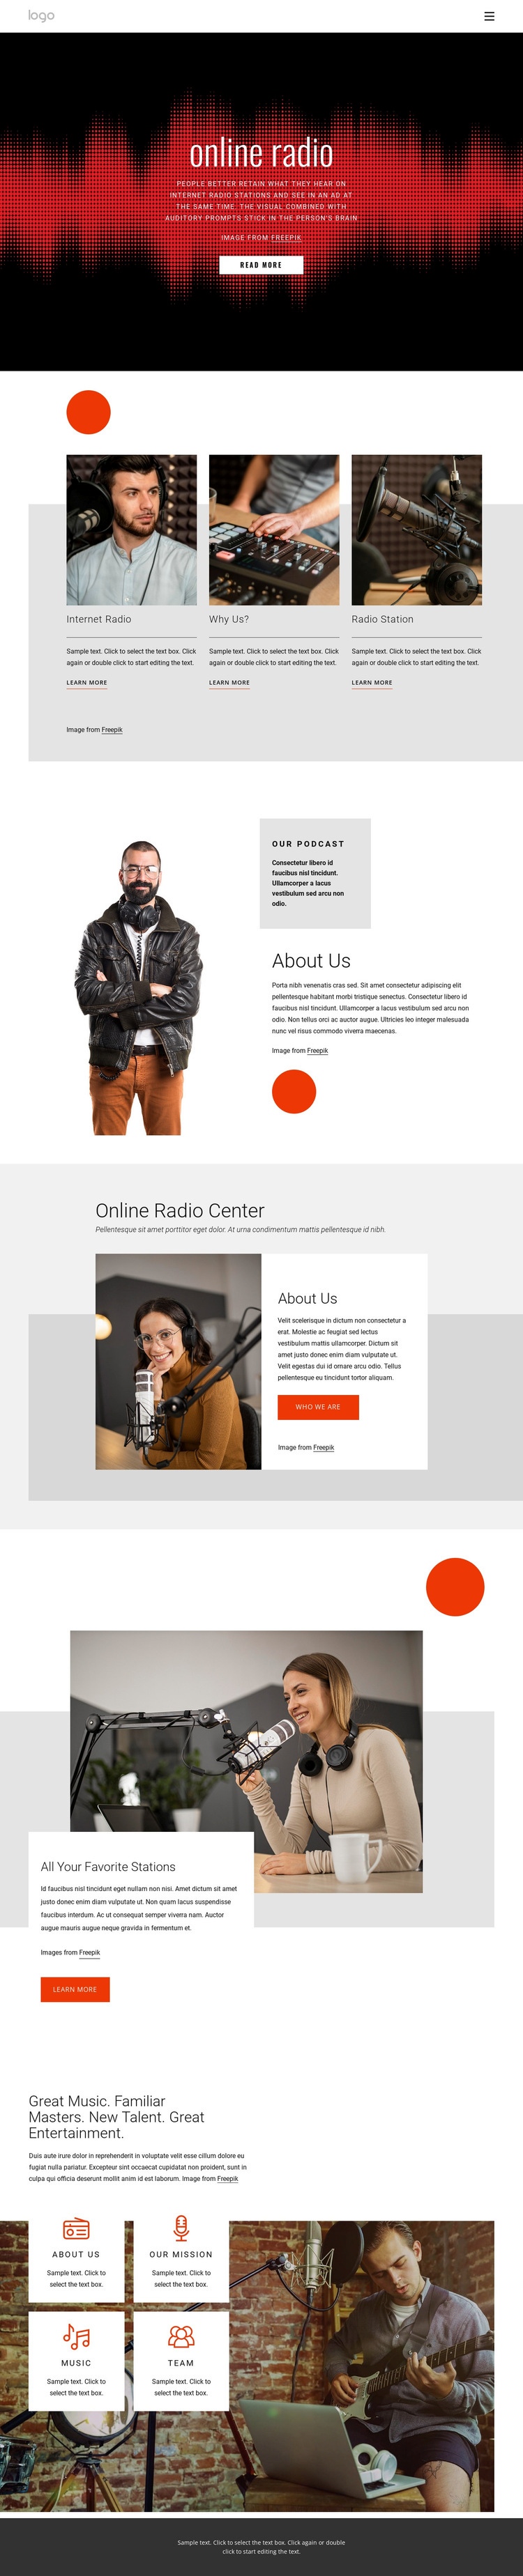 Online radio shows Homepage Design